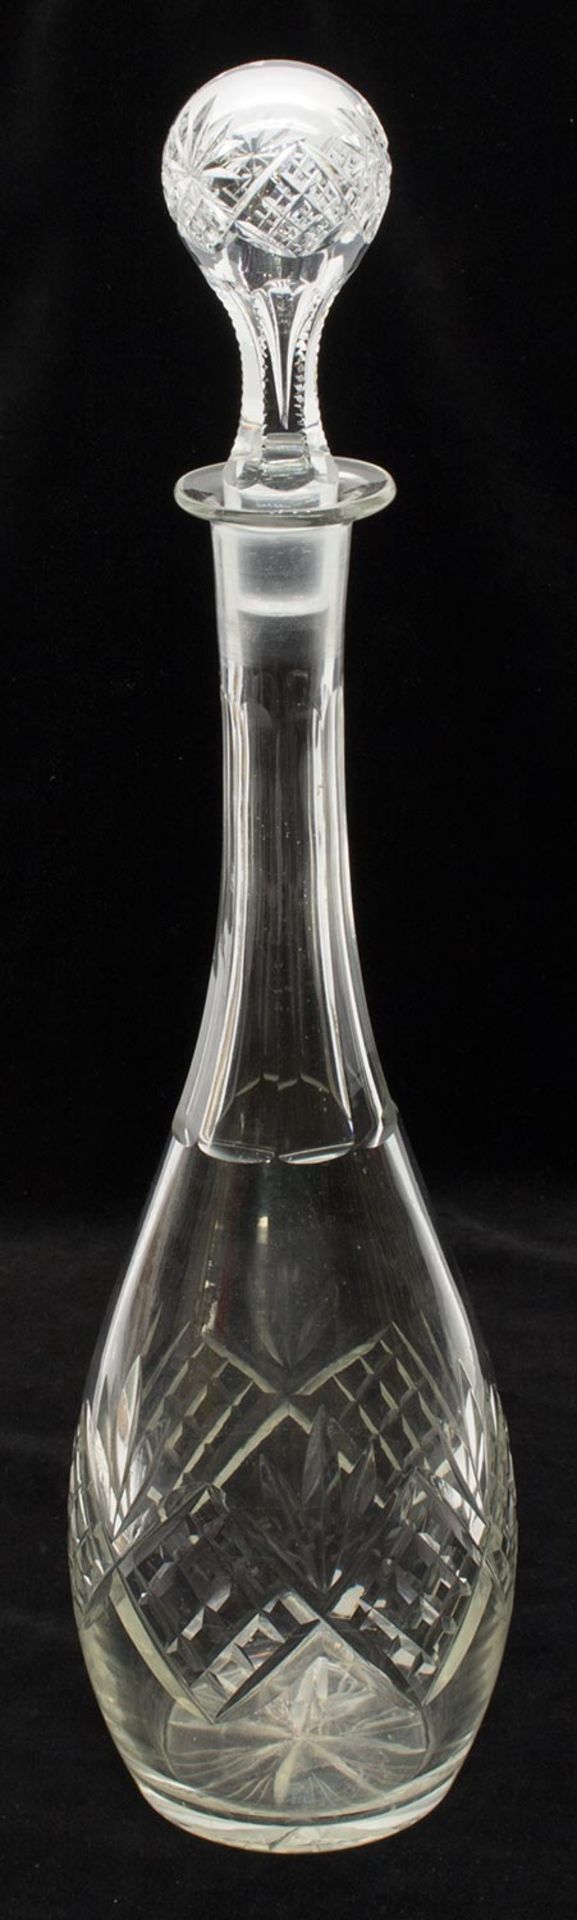 Karaffeum 1900, Kristallglas, handgeschliffener Dekor, H. 40 cm